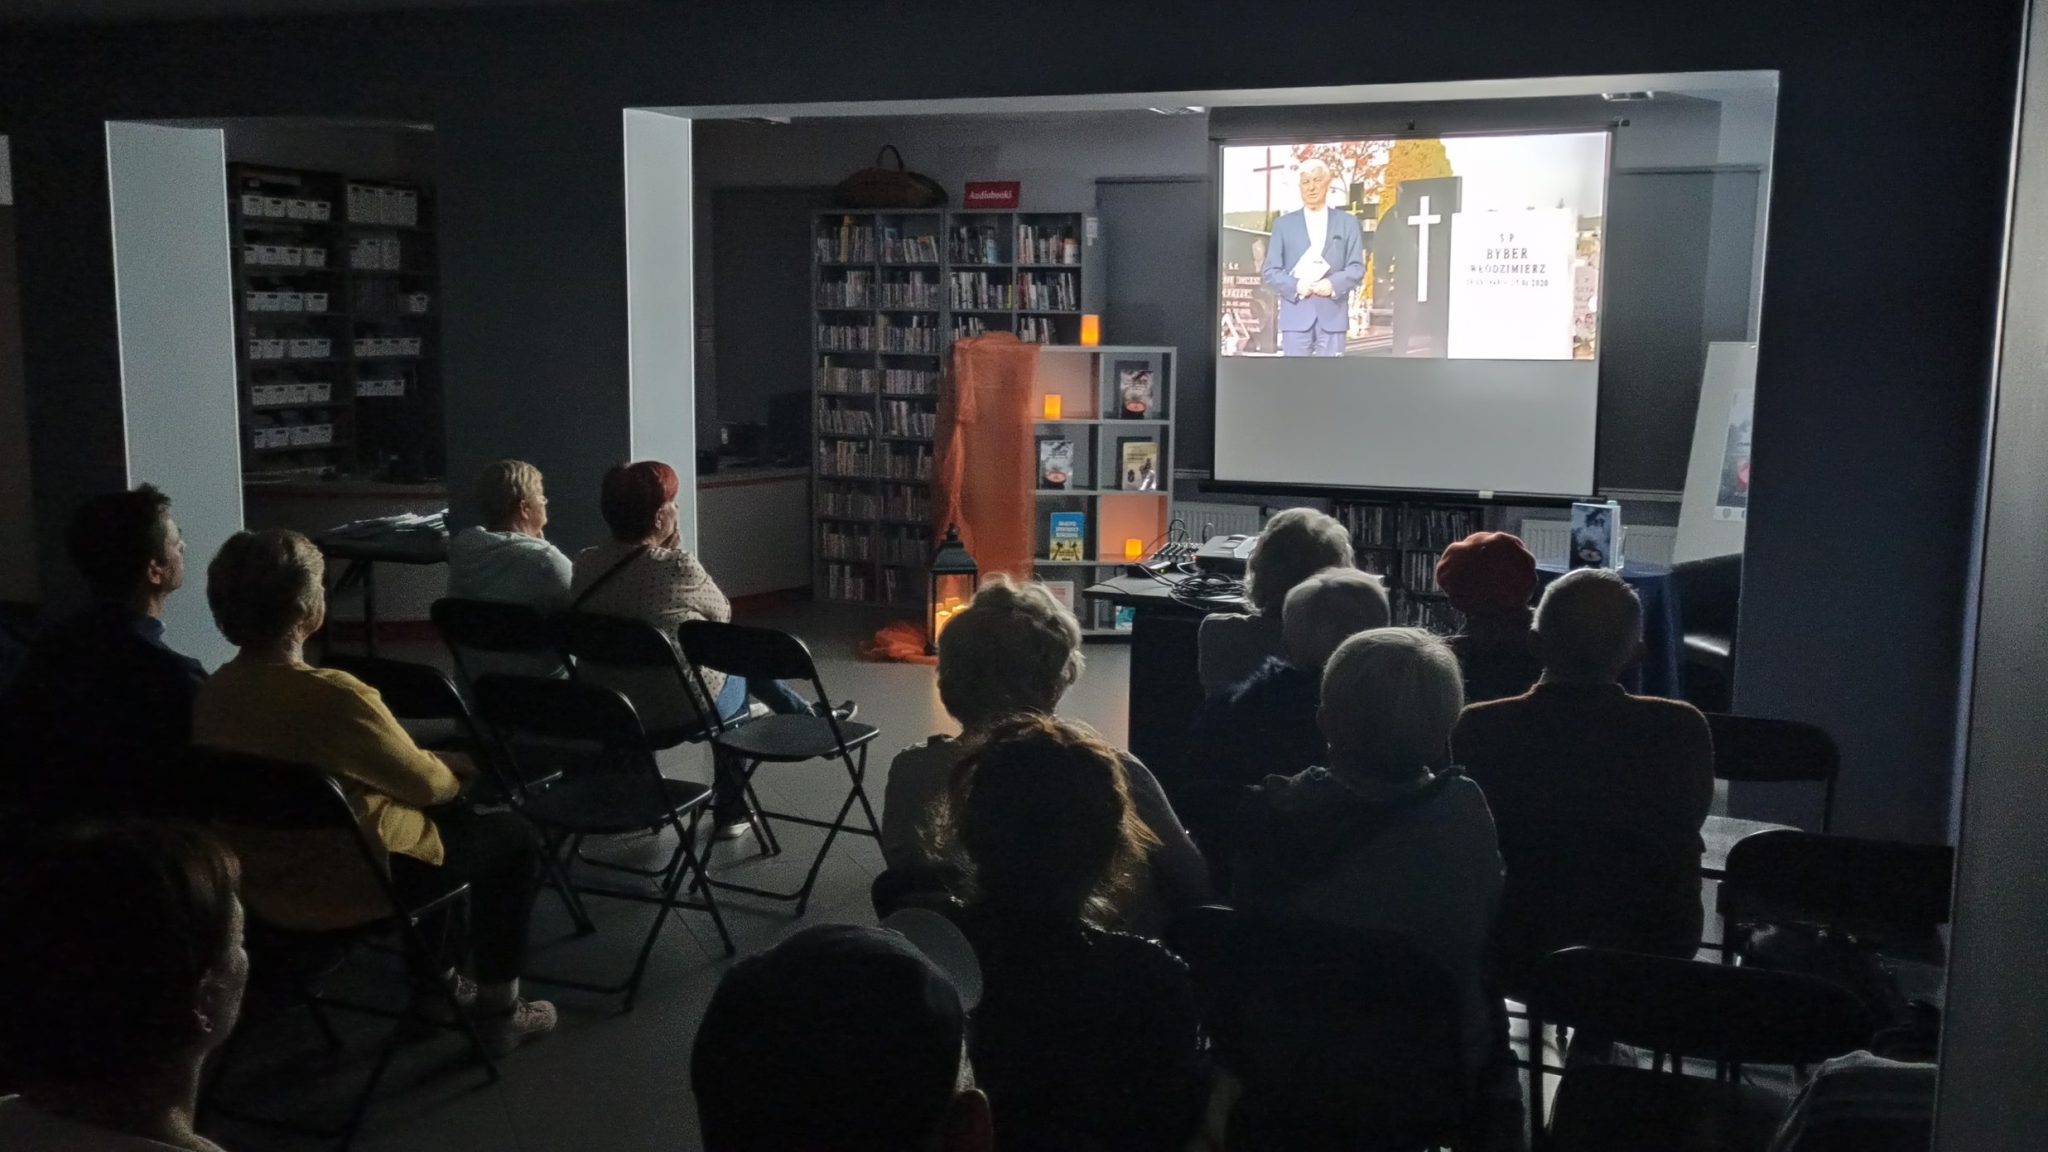 na ekranie projektora puszczany jest film, publiczność siedzi w ciemnej sali